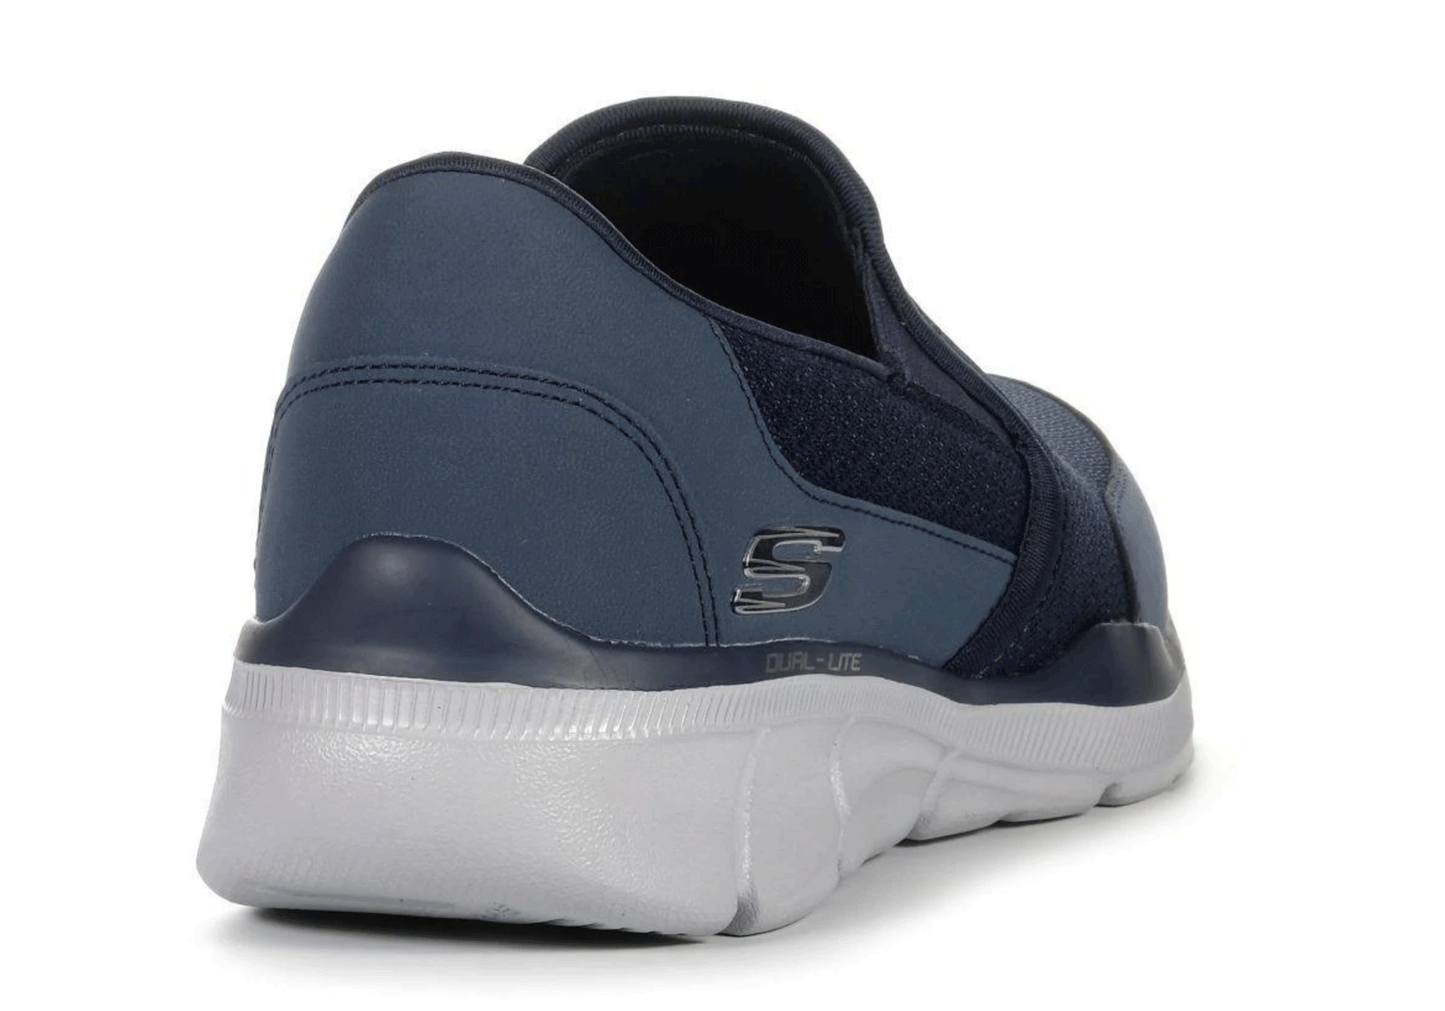 Skechers Men's Equalizer 3.0 Bluegate Loafer (Navy Blue) - (52984-NVY) - ZK - R2L15